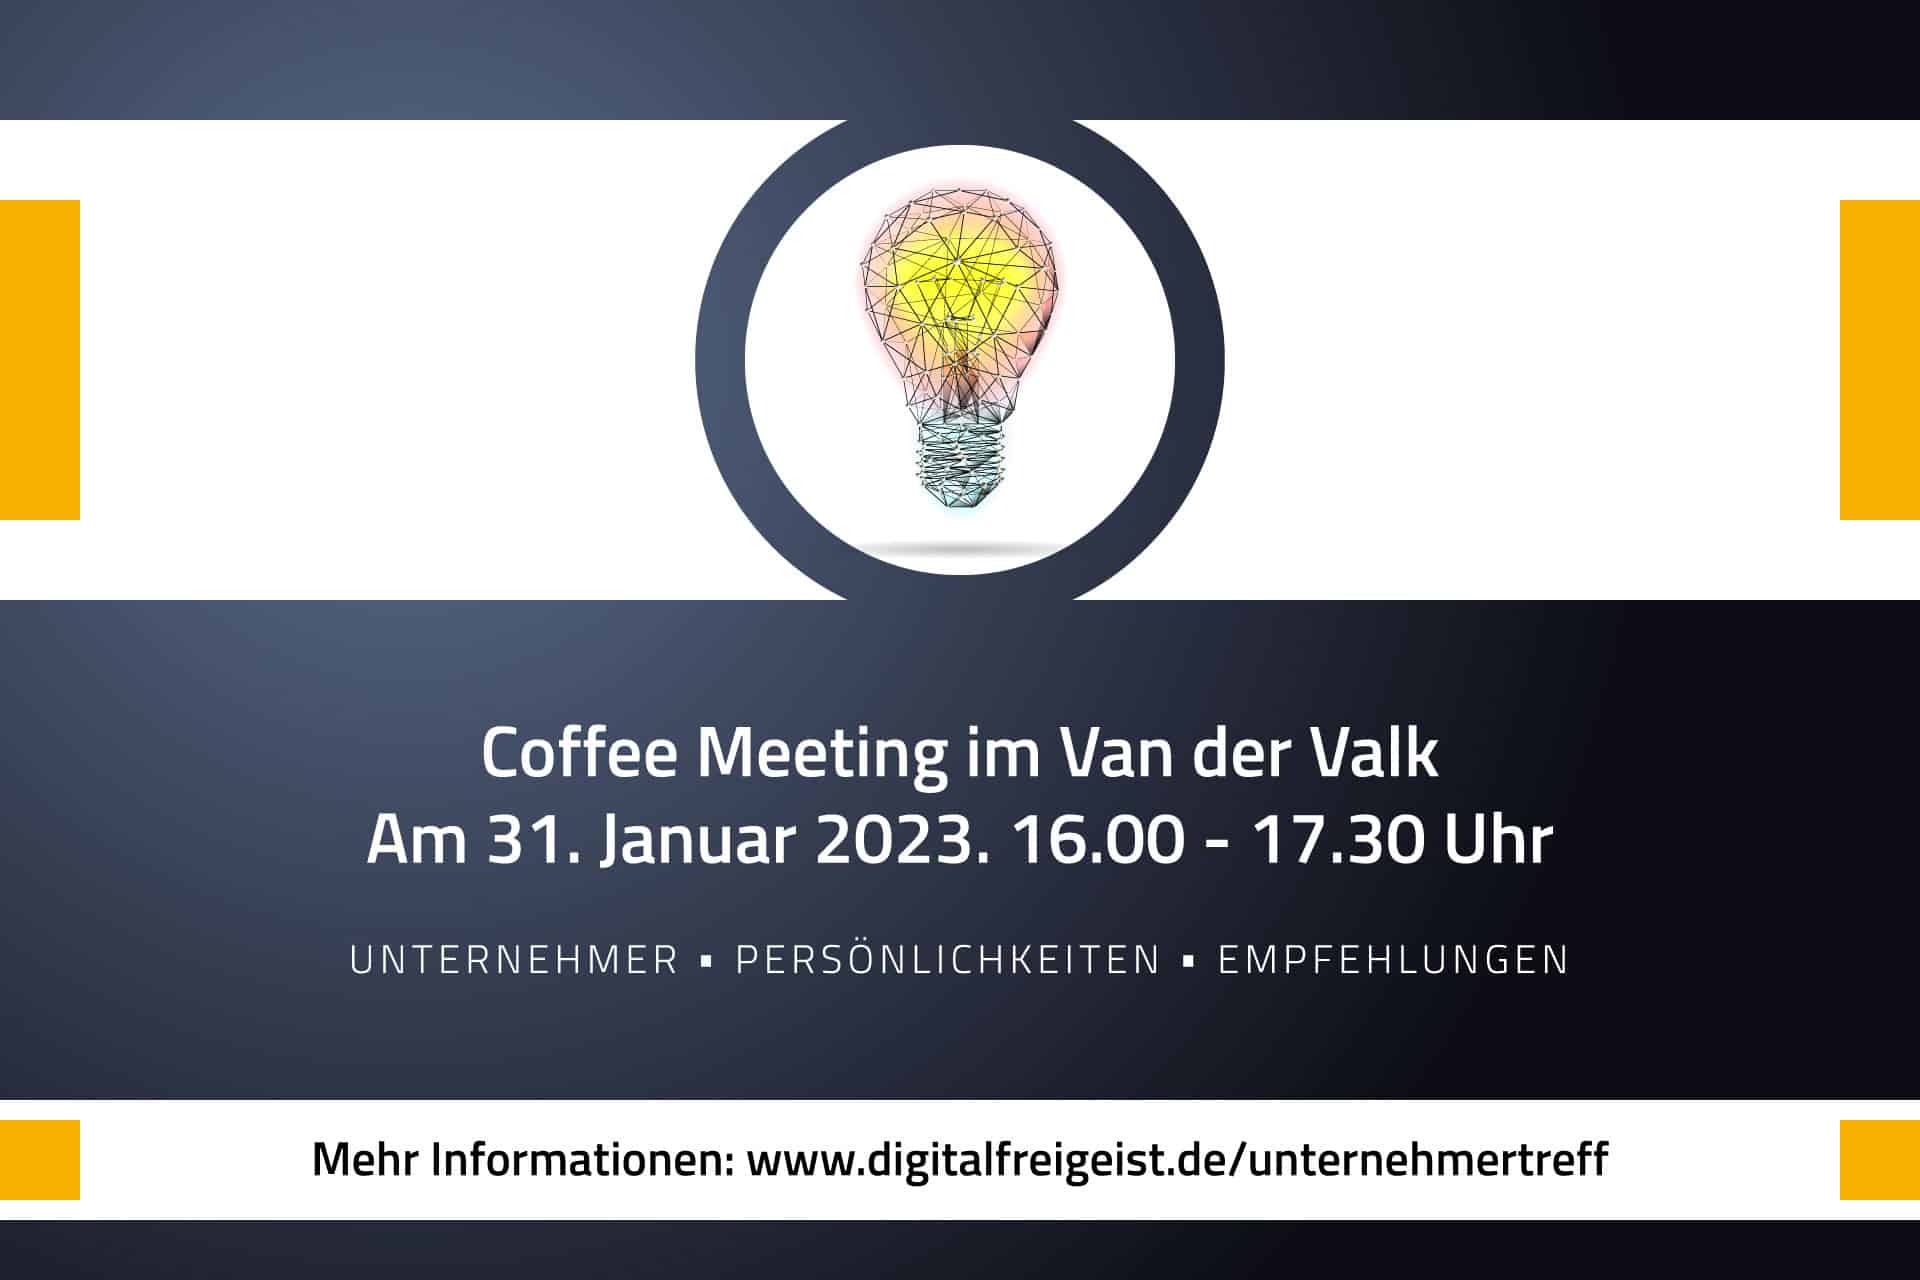 Unternehmertreff Hildesheim: DIGITAL Freigeist Coffee Meeting